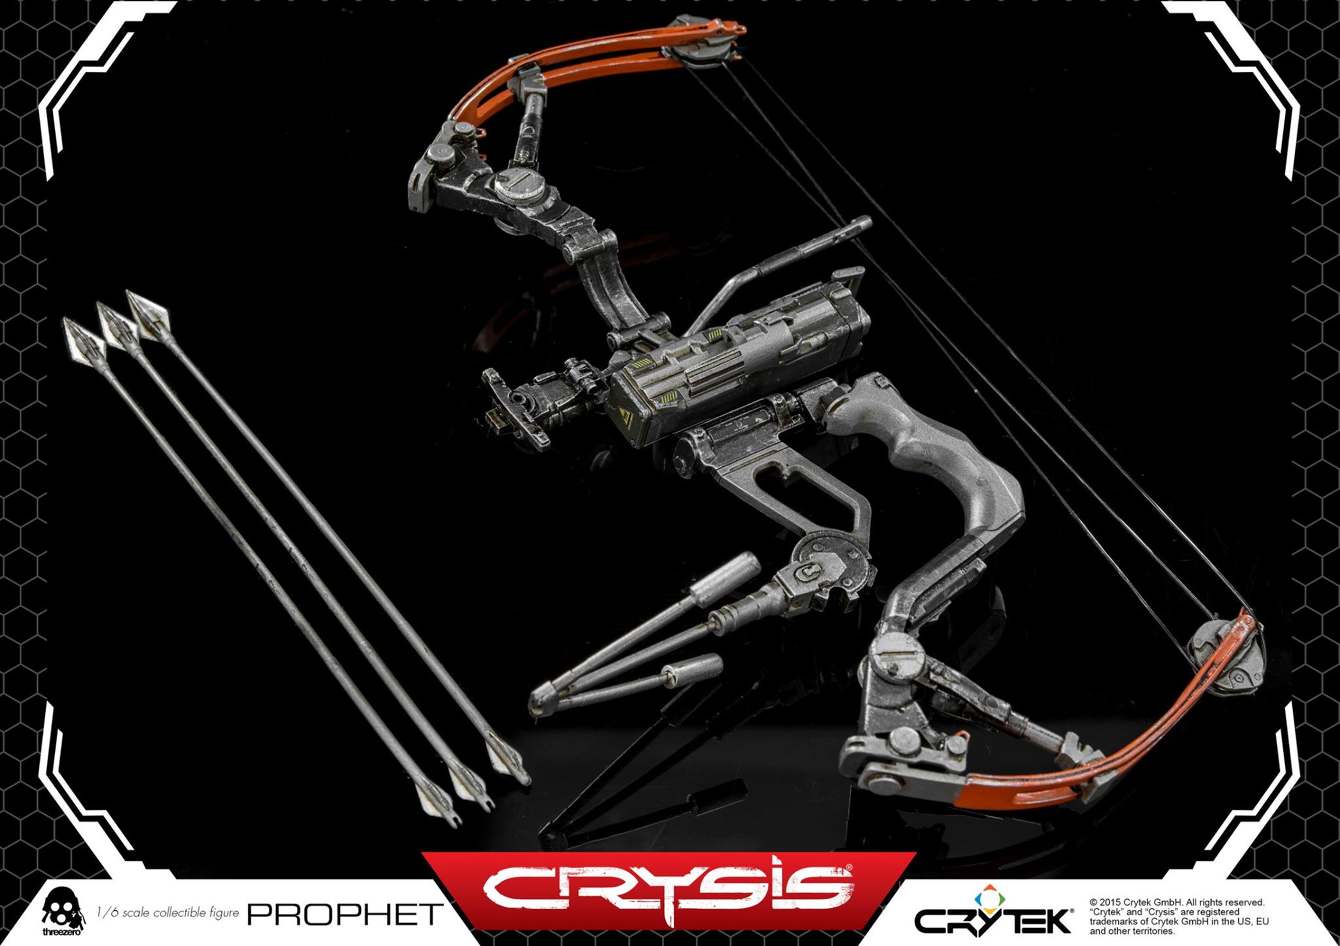 ThreeZero-Crysis-video-game-Prophet-CRY111_1340_c.jpg